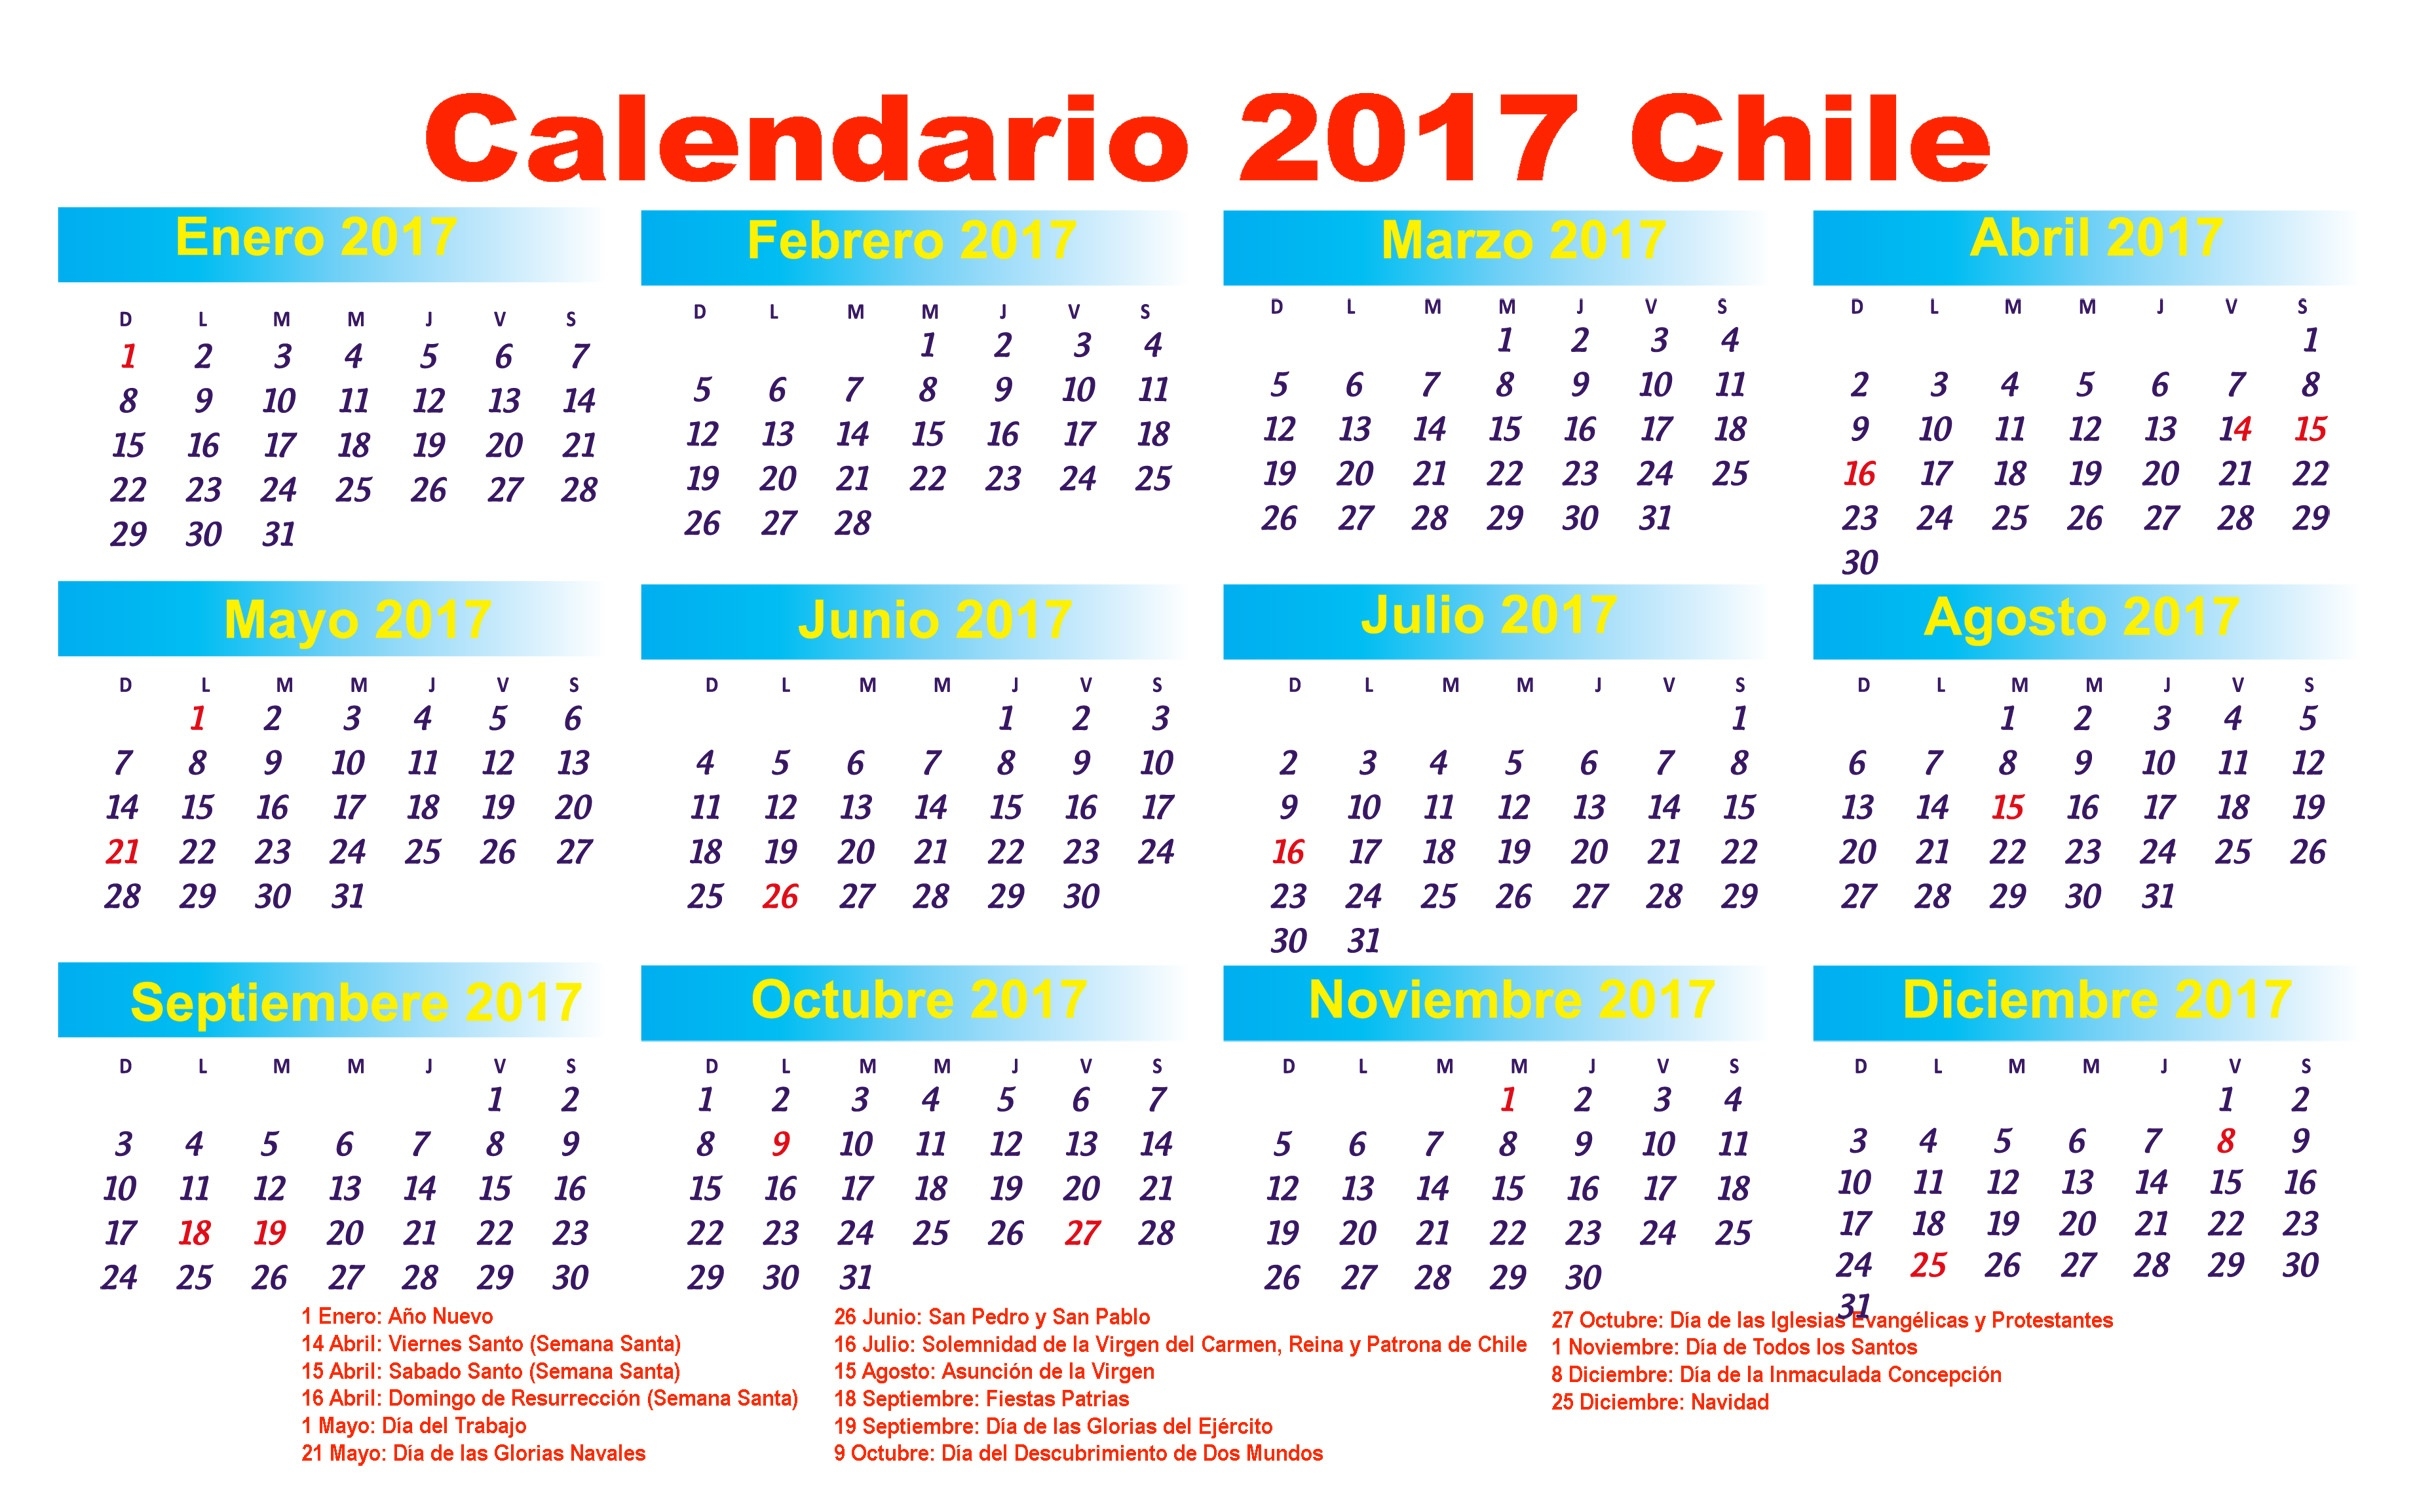 Calendario 2017 | 2019 2018 Calendar Printable With Holidays List  Calendarios 17 Feriados En Chile